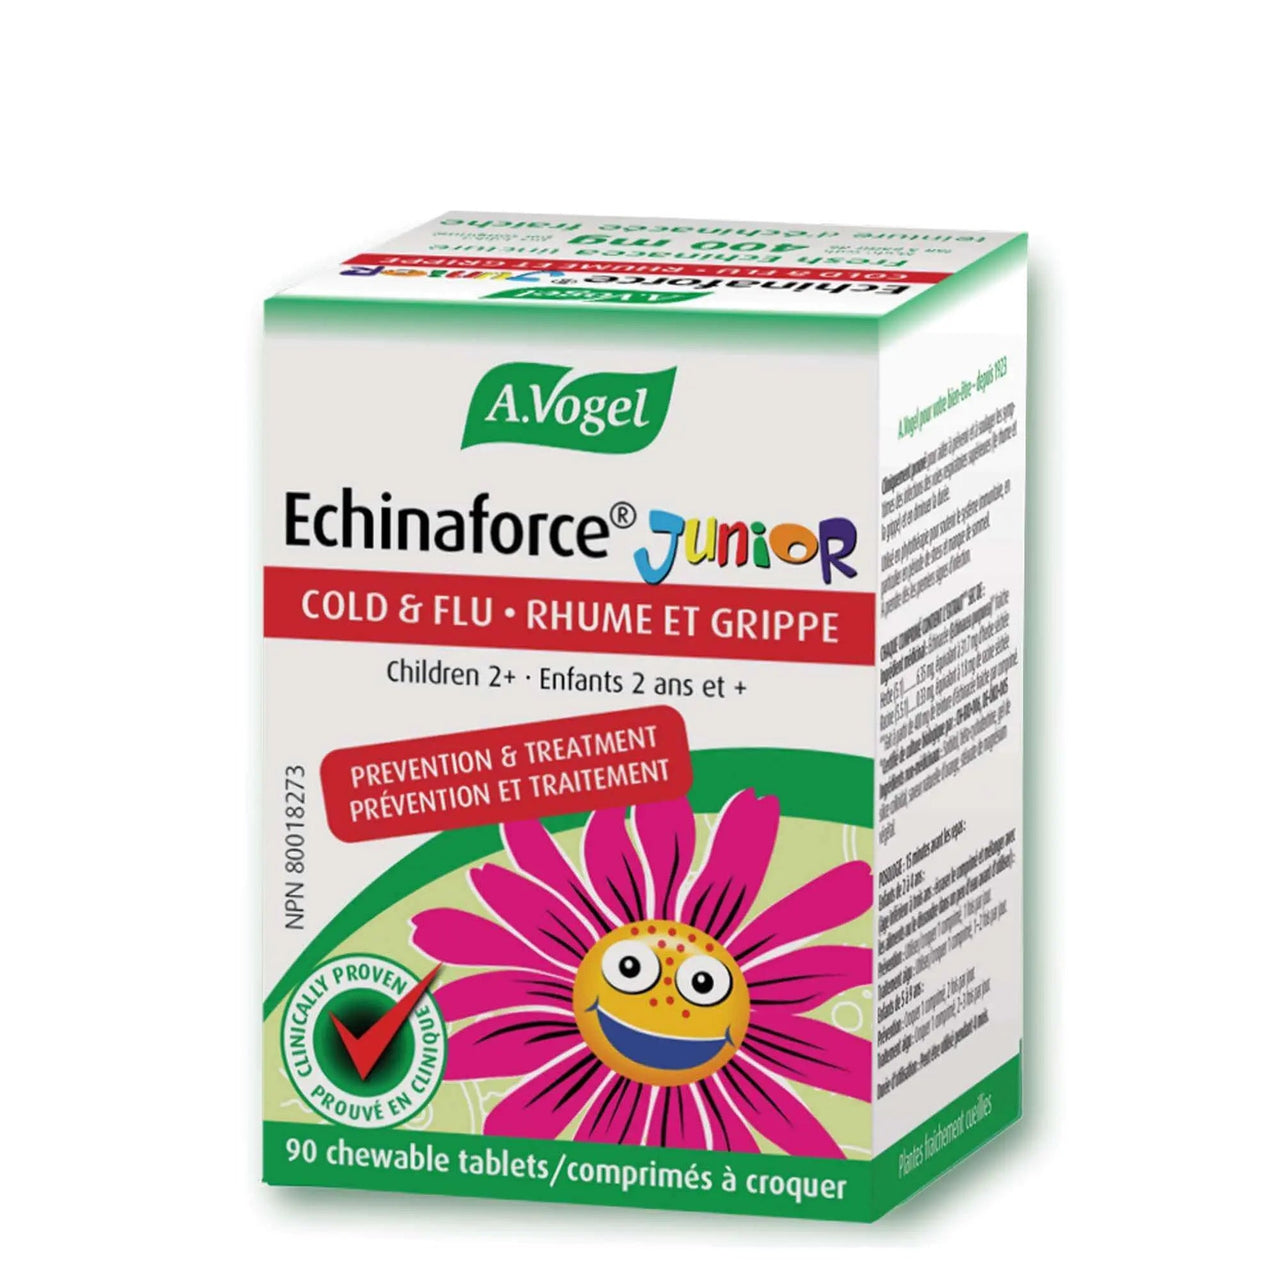 A. Vogel Echinaforce Junior 90 Chewable Tablets - Nutrition Plus